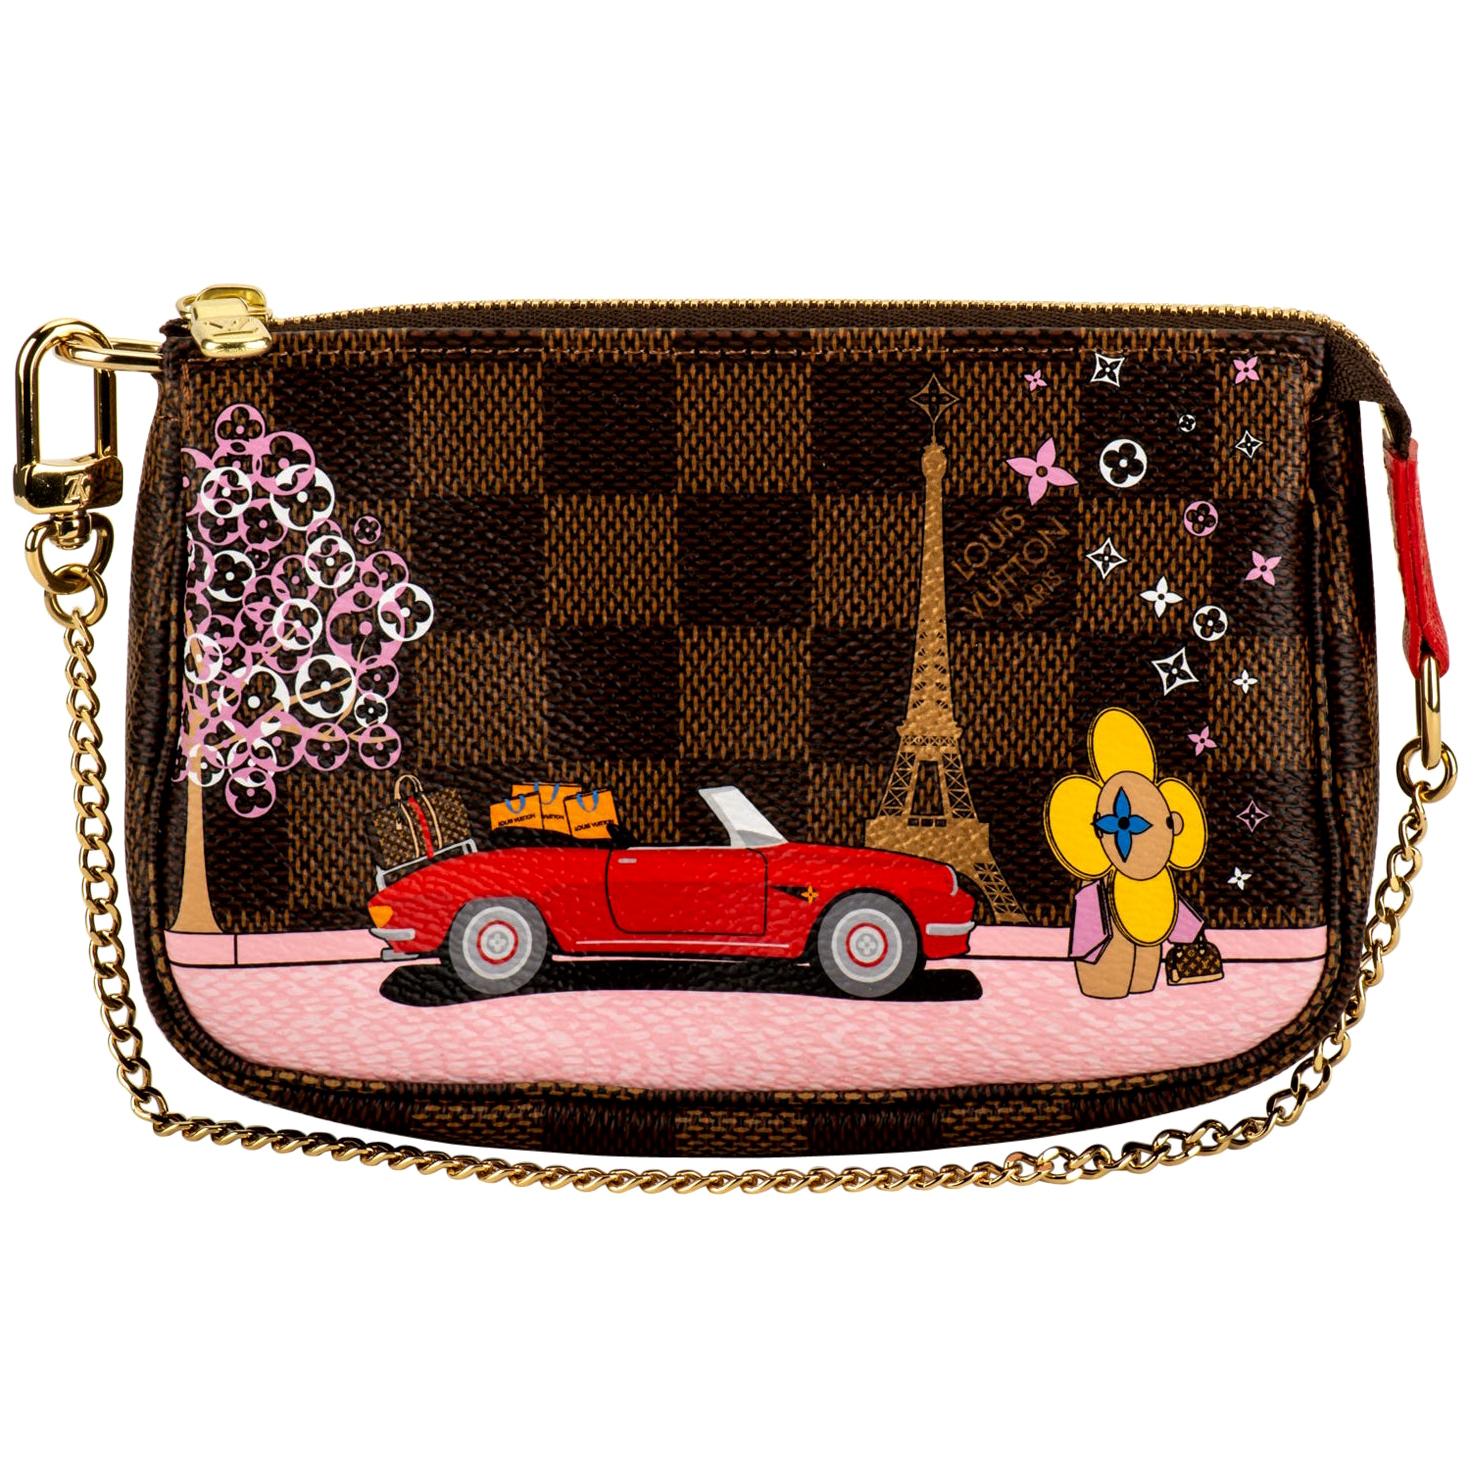 New in Box Louis Vuitton Christmas Paris Pouchette Limited Edition Bag